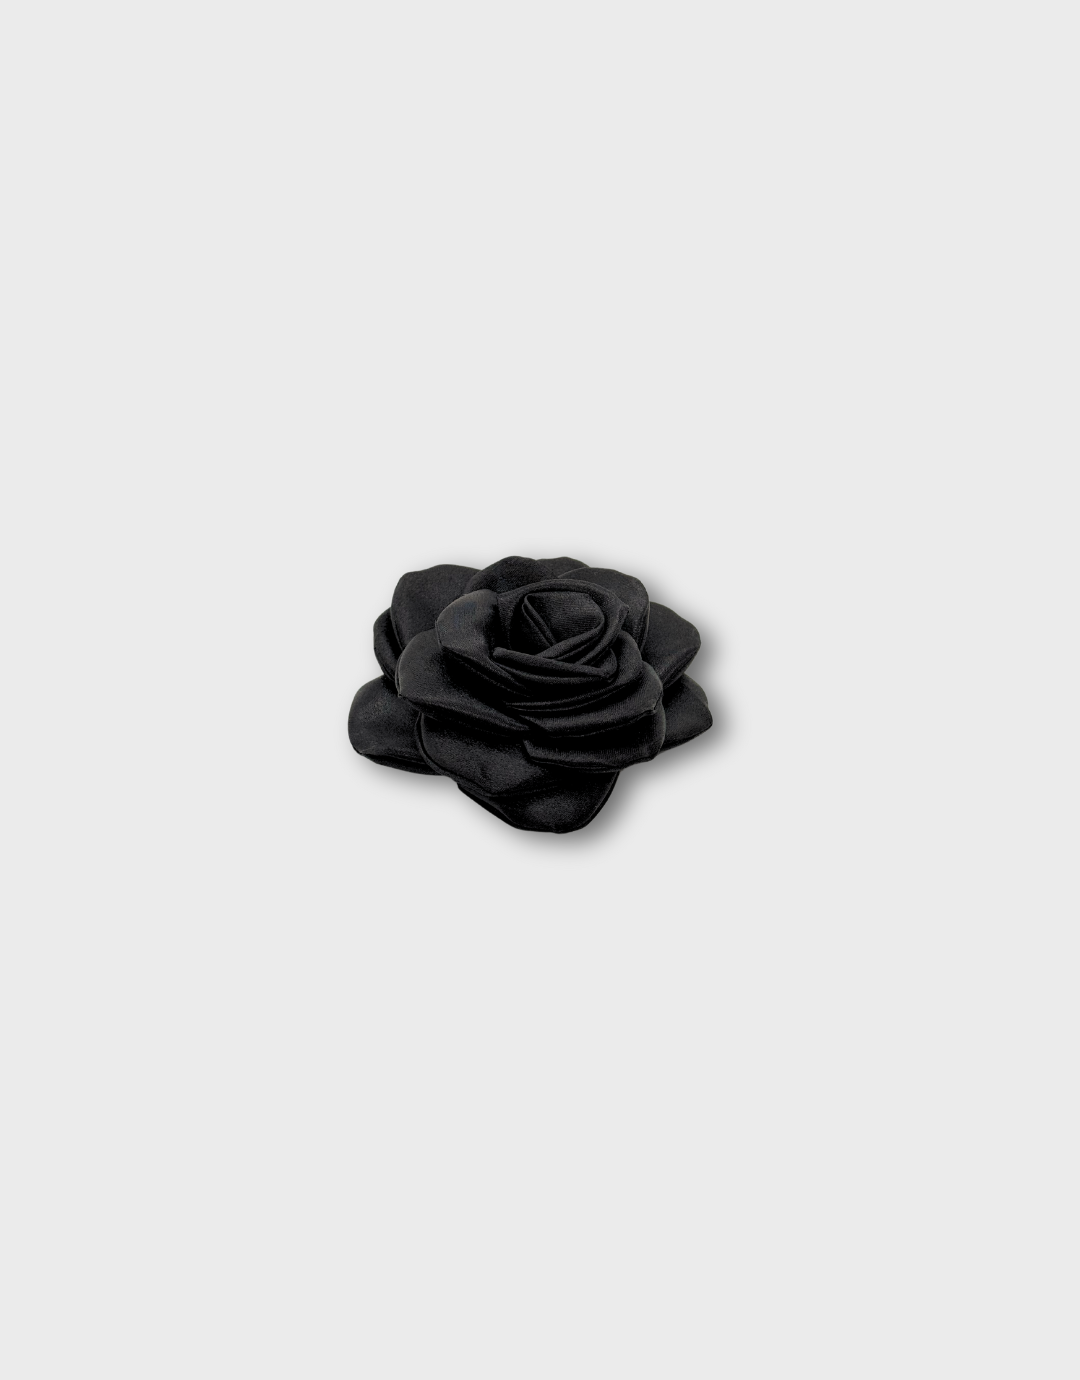 Barette rose noire à porter dans les cheveux, broche à porter sur une veste, Fleur, ceinture avec fleurs, rose choker, collier de roses 